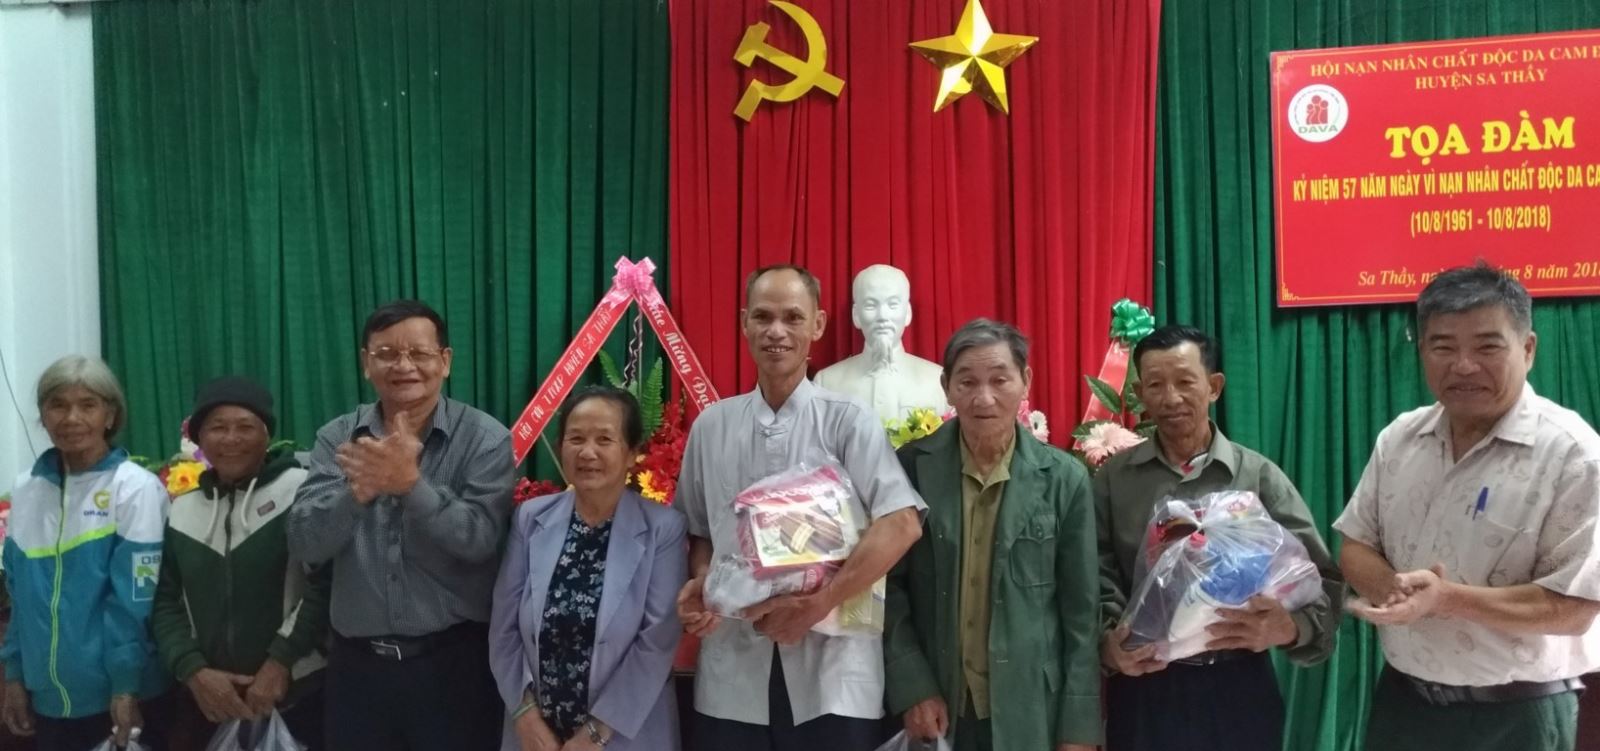 Sa Thầy tọa đàm kỉ niệm 57 năm ngày vì nạn nhân chất độc da cam Việt Nam